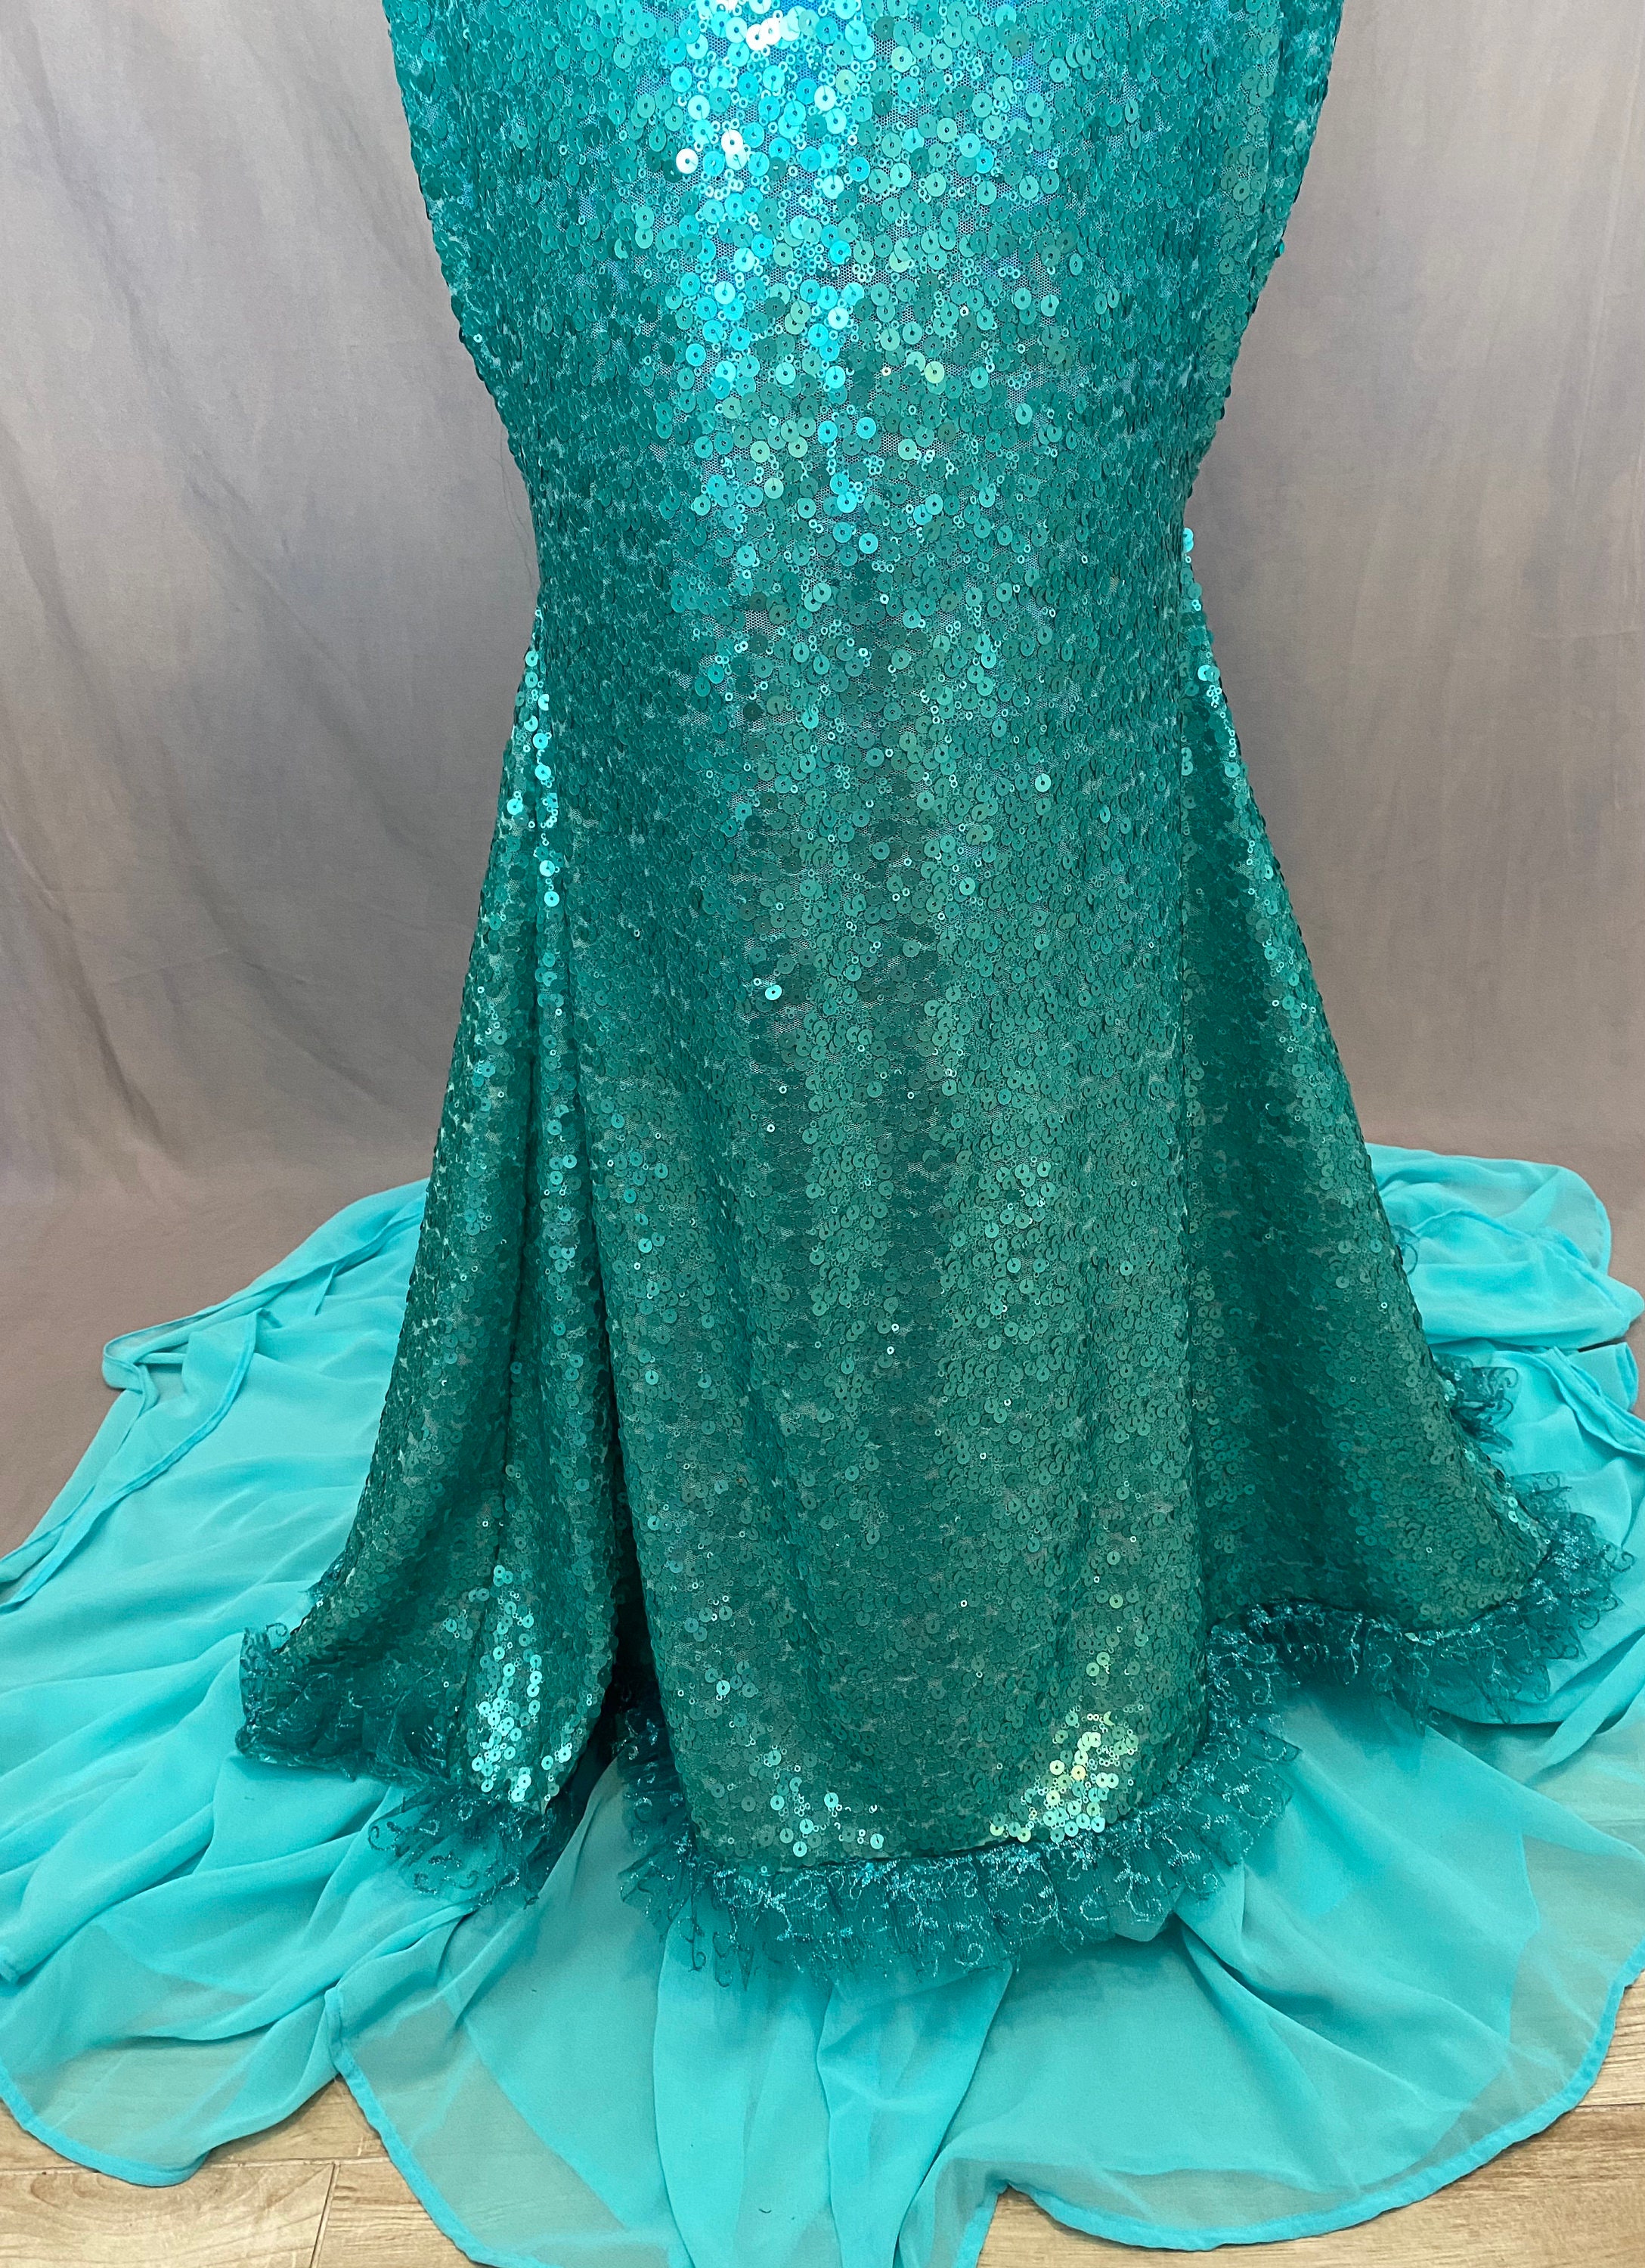 Ariel Little Mermaid Inspired Dress Walking Tail - Etsy